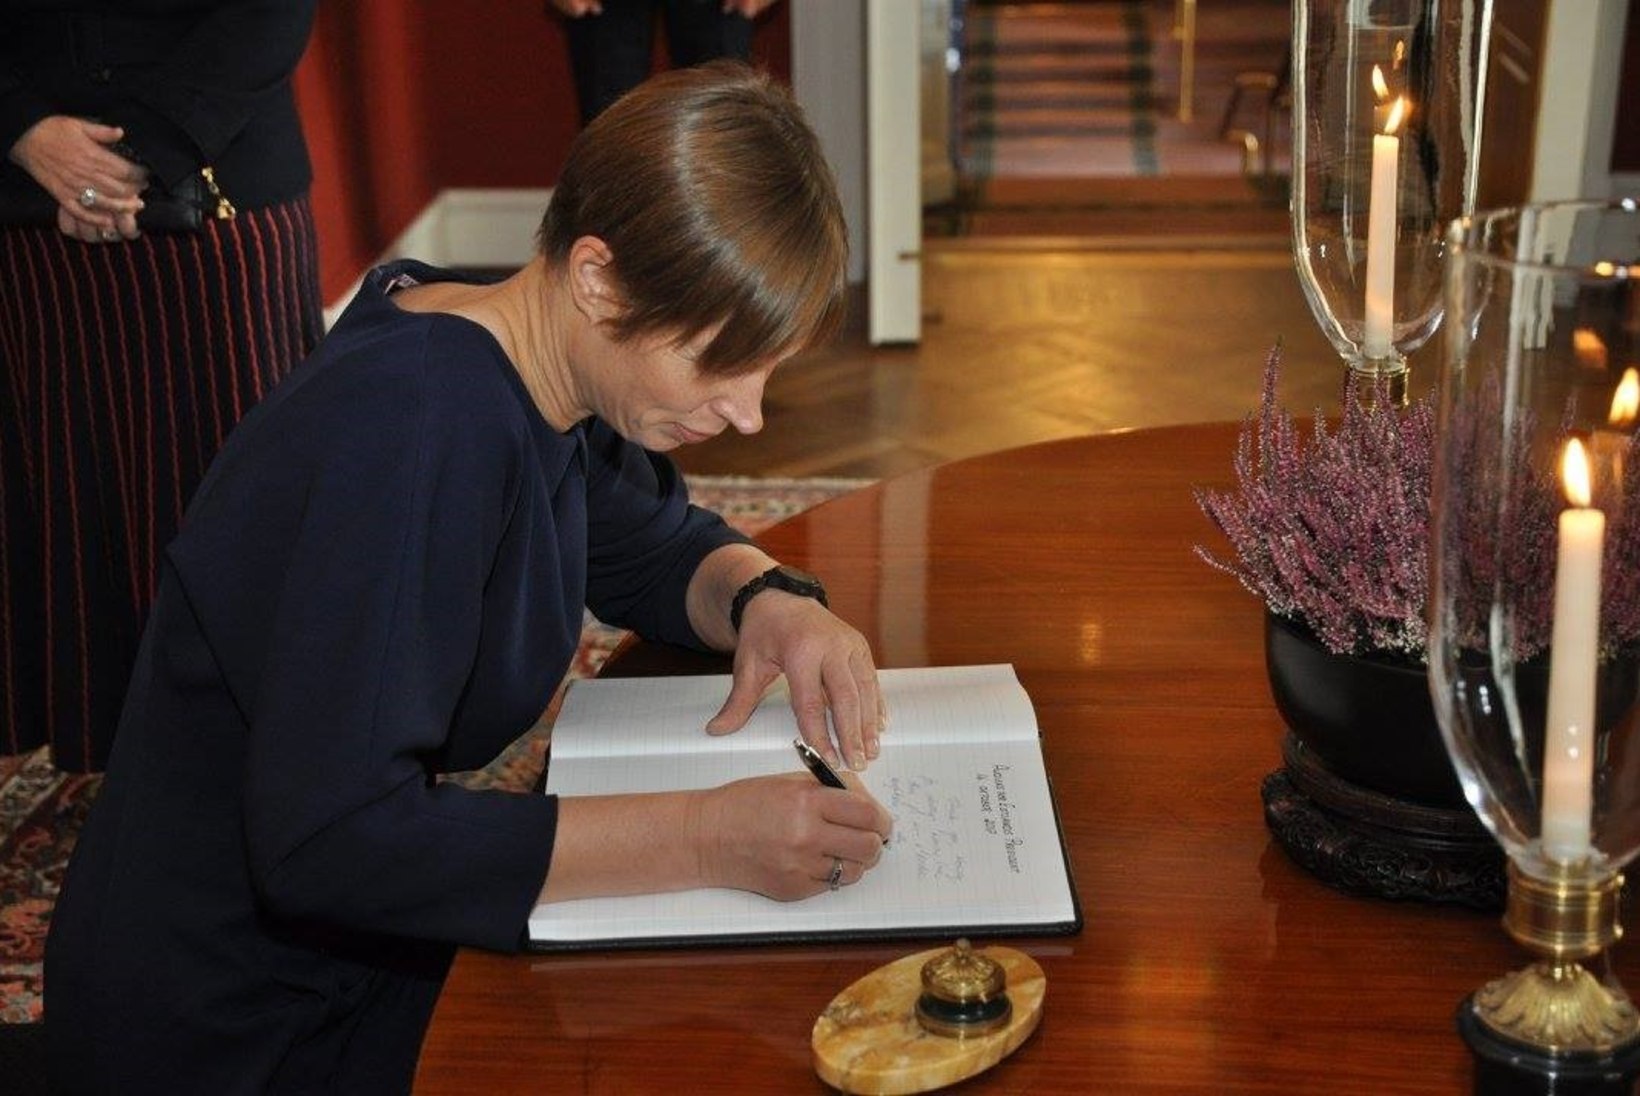 Kuhu saadab president Kersti Kaljulaid kõige rohkem autogramme?